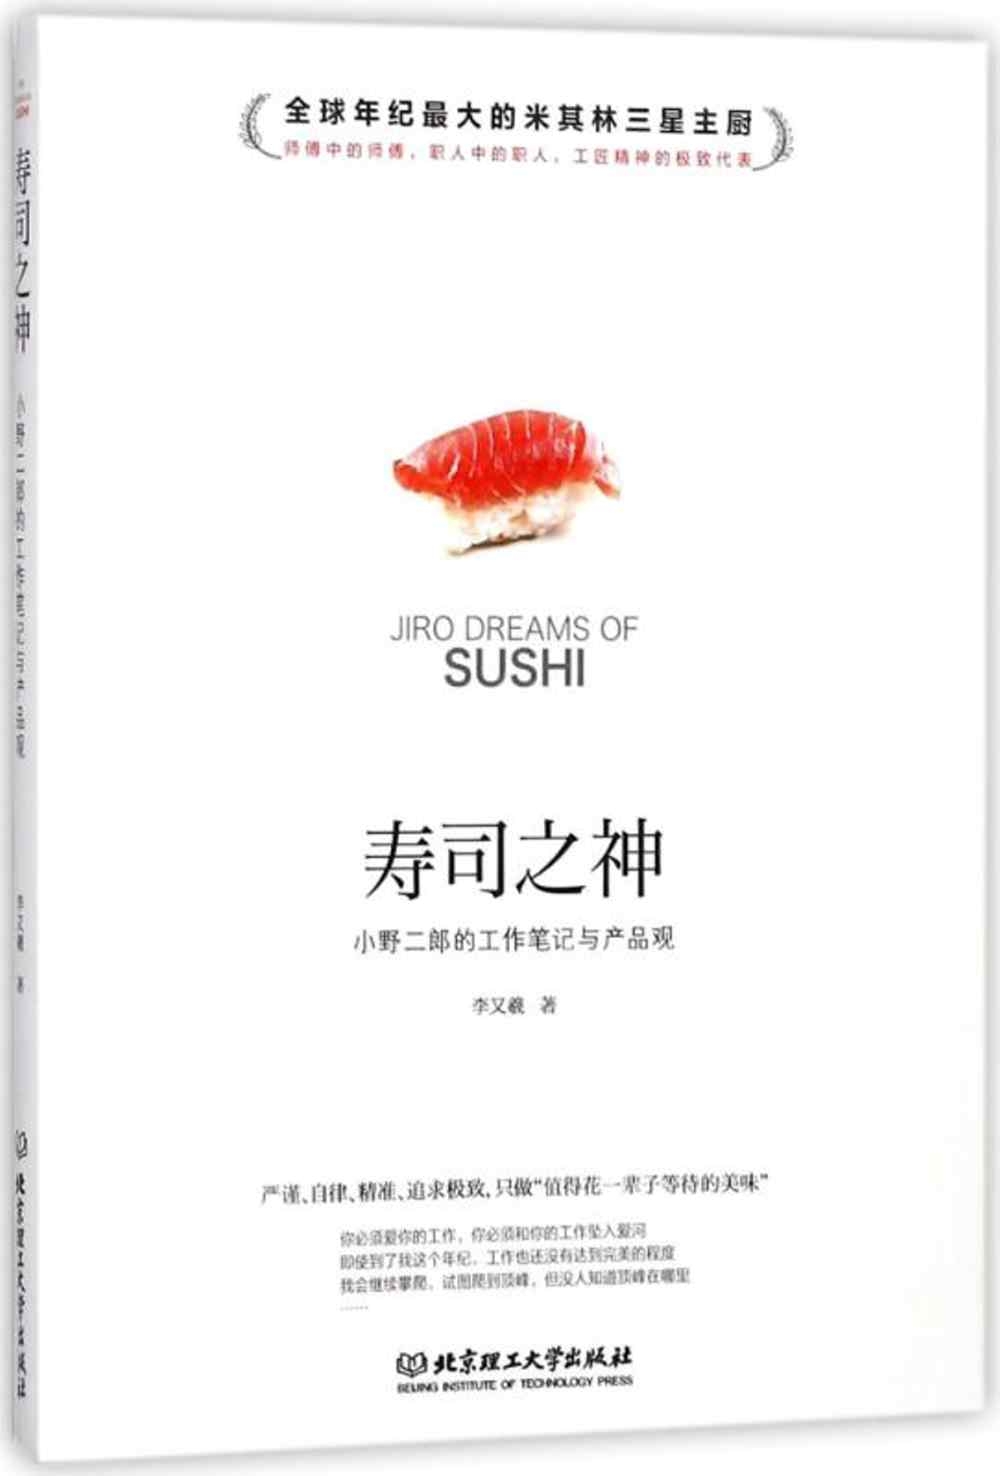 壽司之神：小野二郎的工作筆記與產品觀